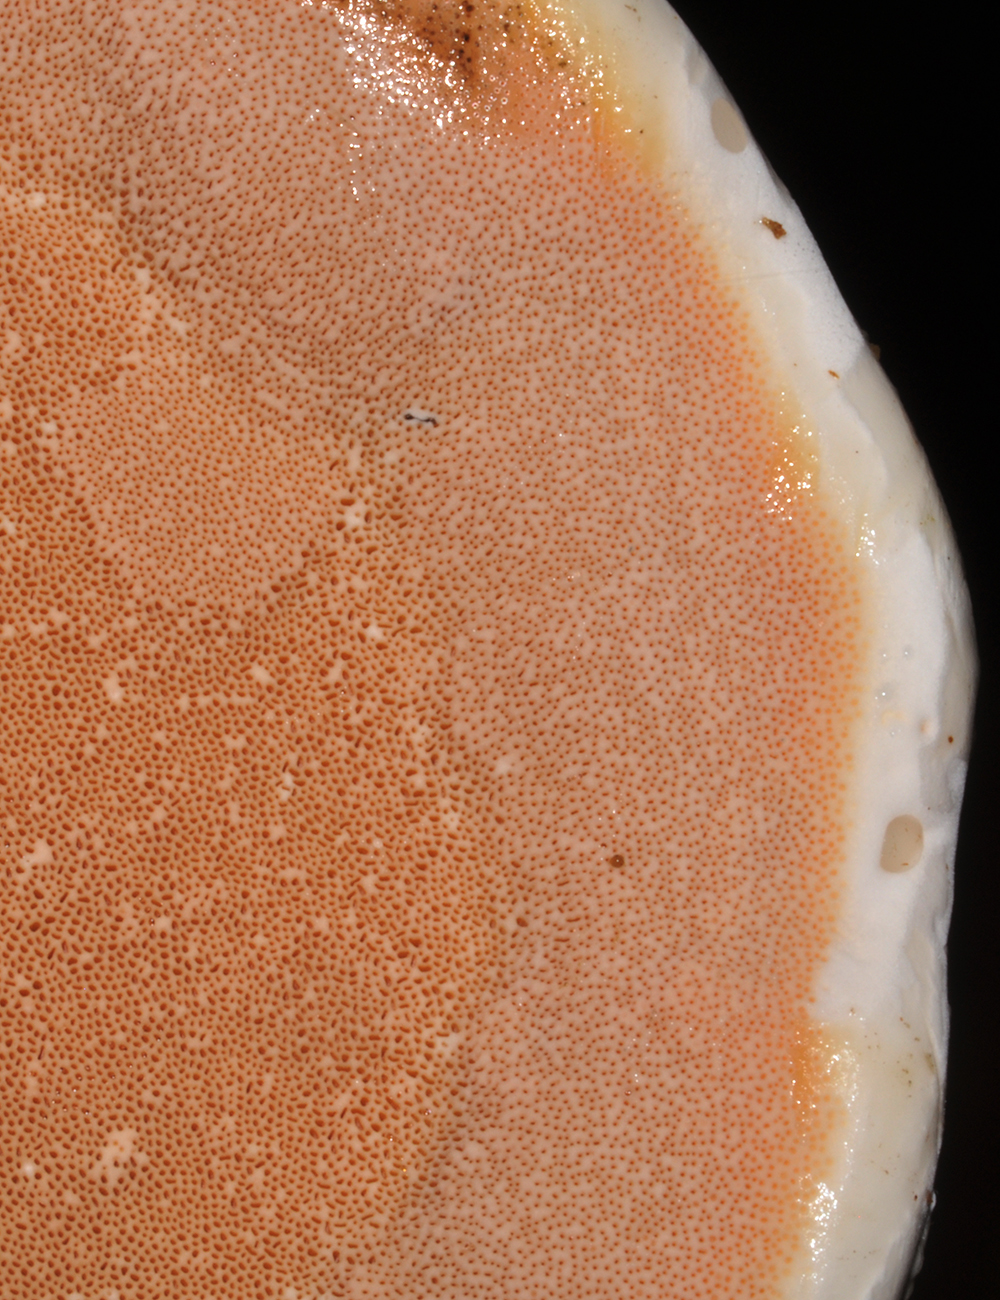 Detalle del hongo Rigidoporus microporus. Foto A. Rodríguez